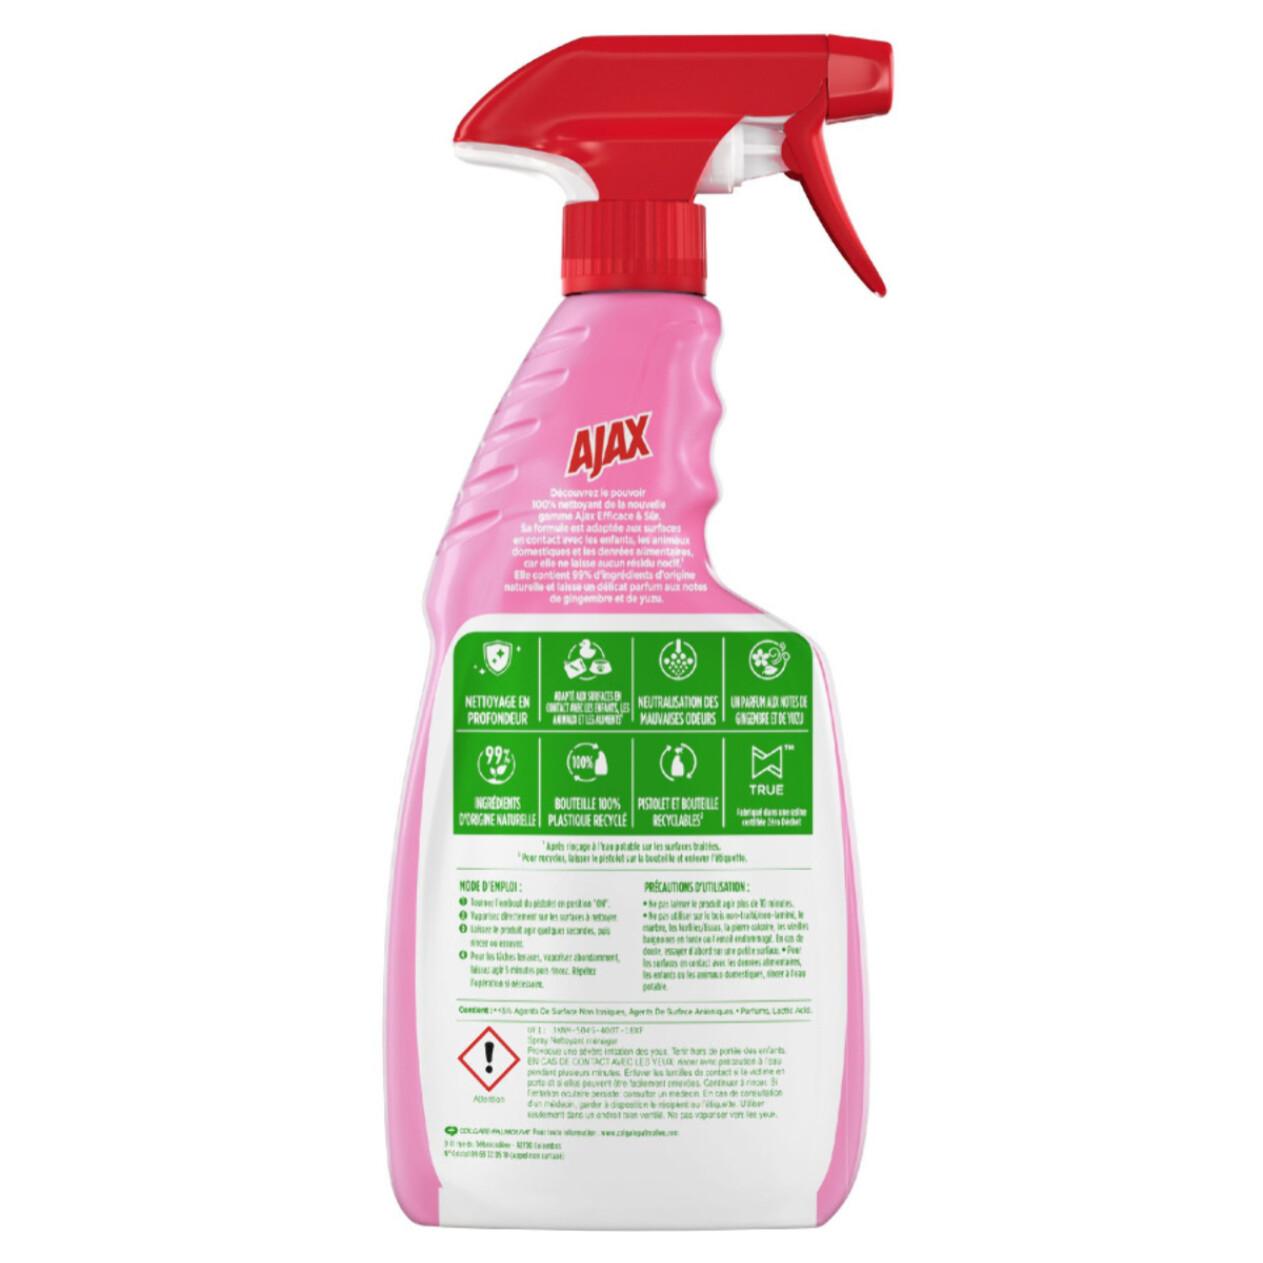 Pack de 12 - Nettoyant ménager spray Ajax efficace & sur - 500 ml